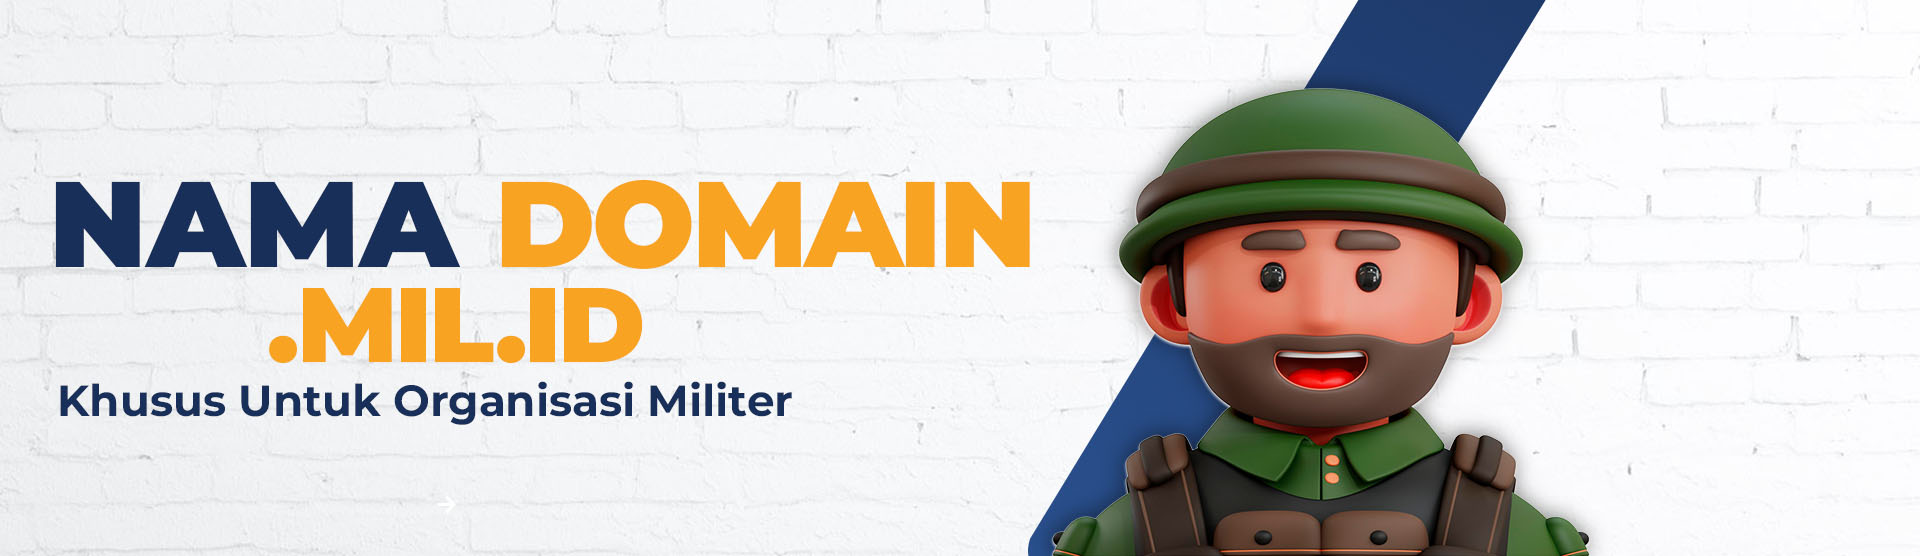 Nama Domain .MIL.ID Khusus Untuk Organisasi Militer